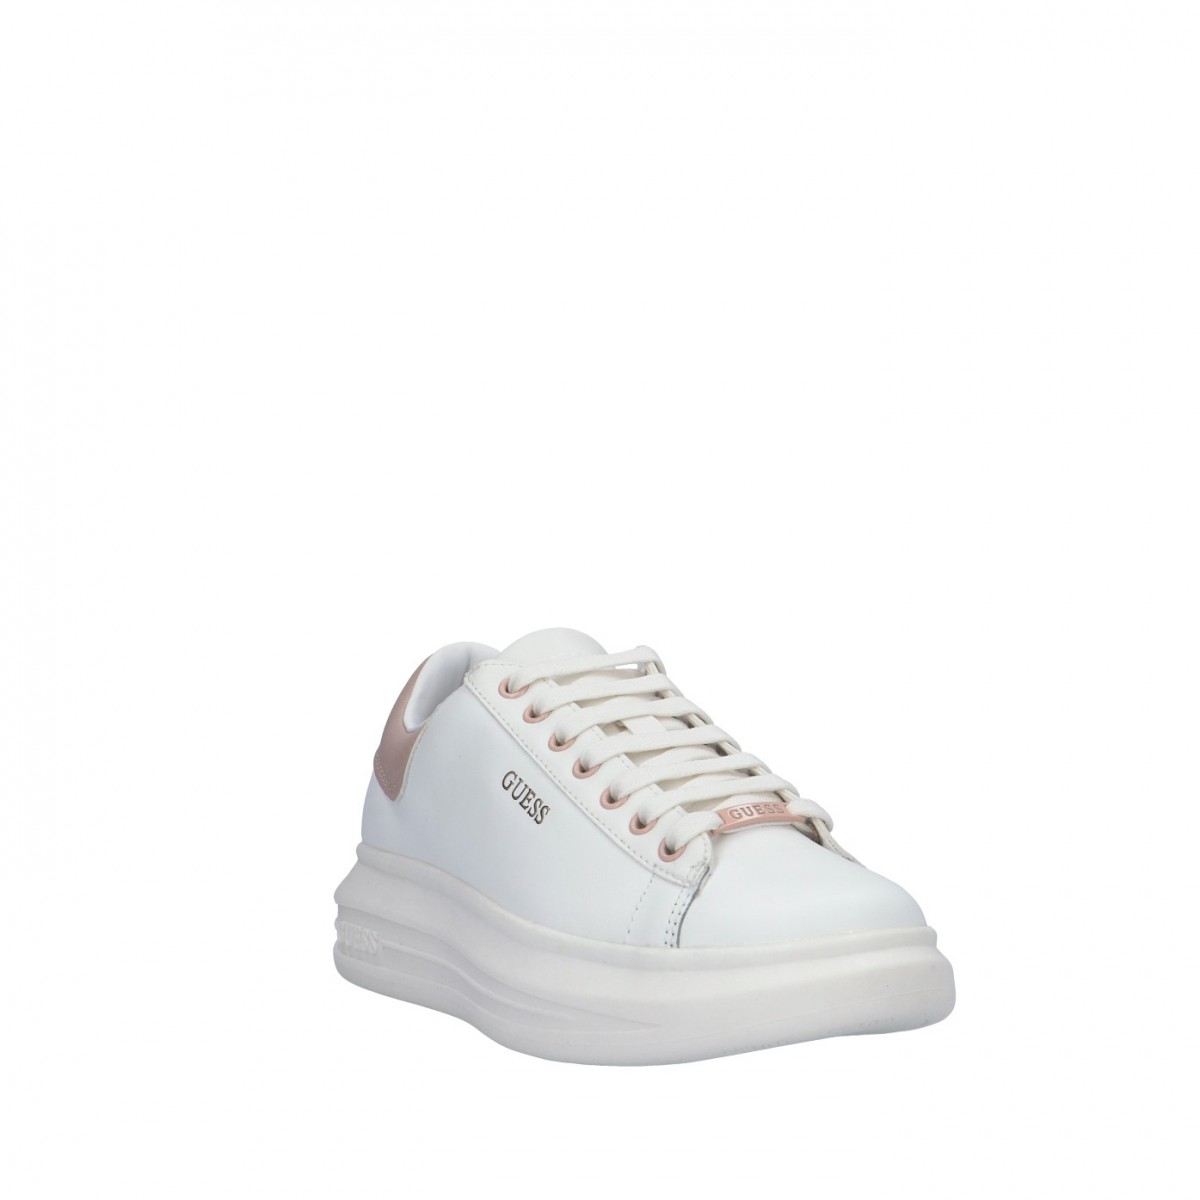 Guess Sneaker Bianco/rosa Gomma FL7RNOELE12